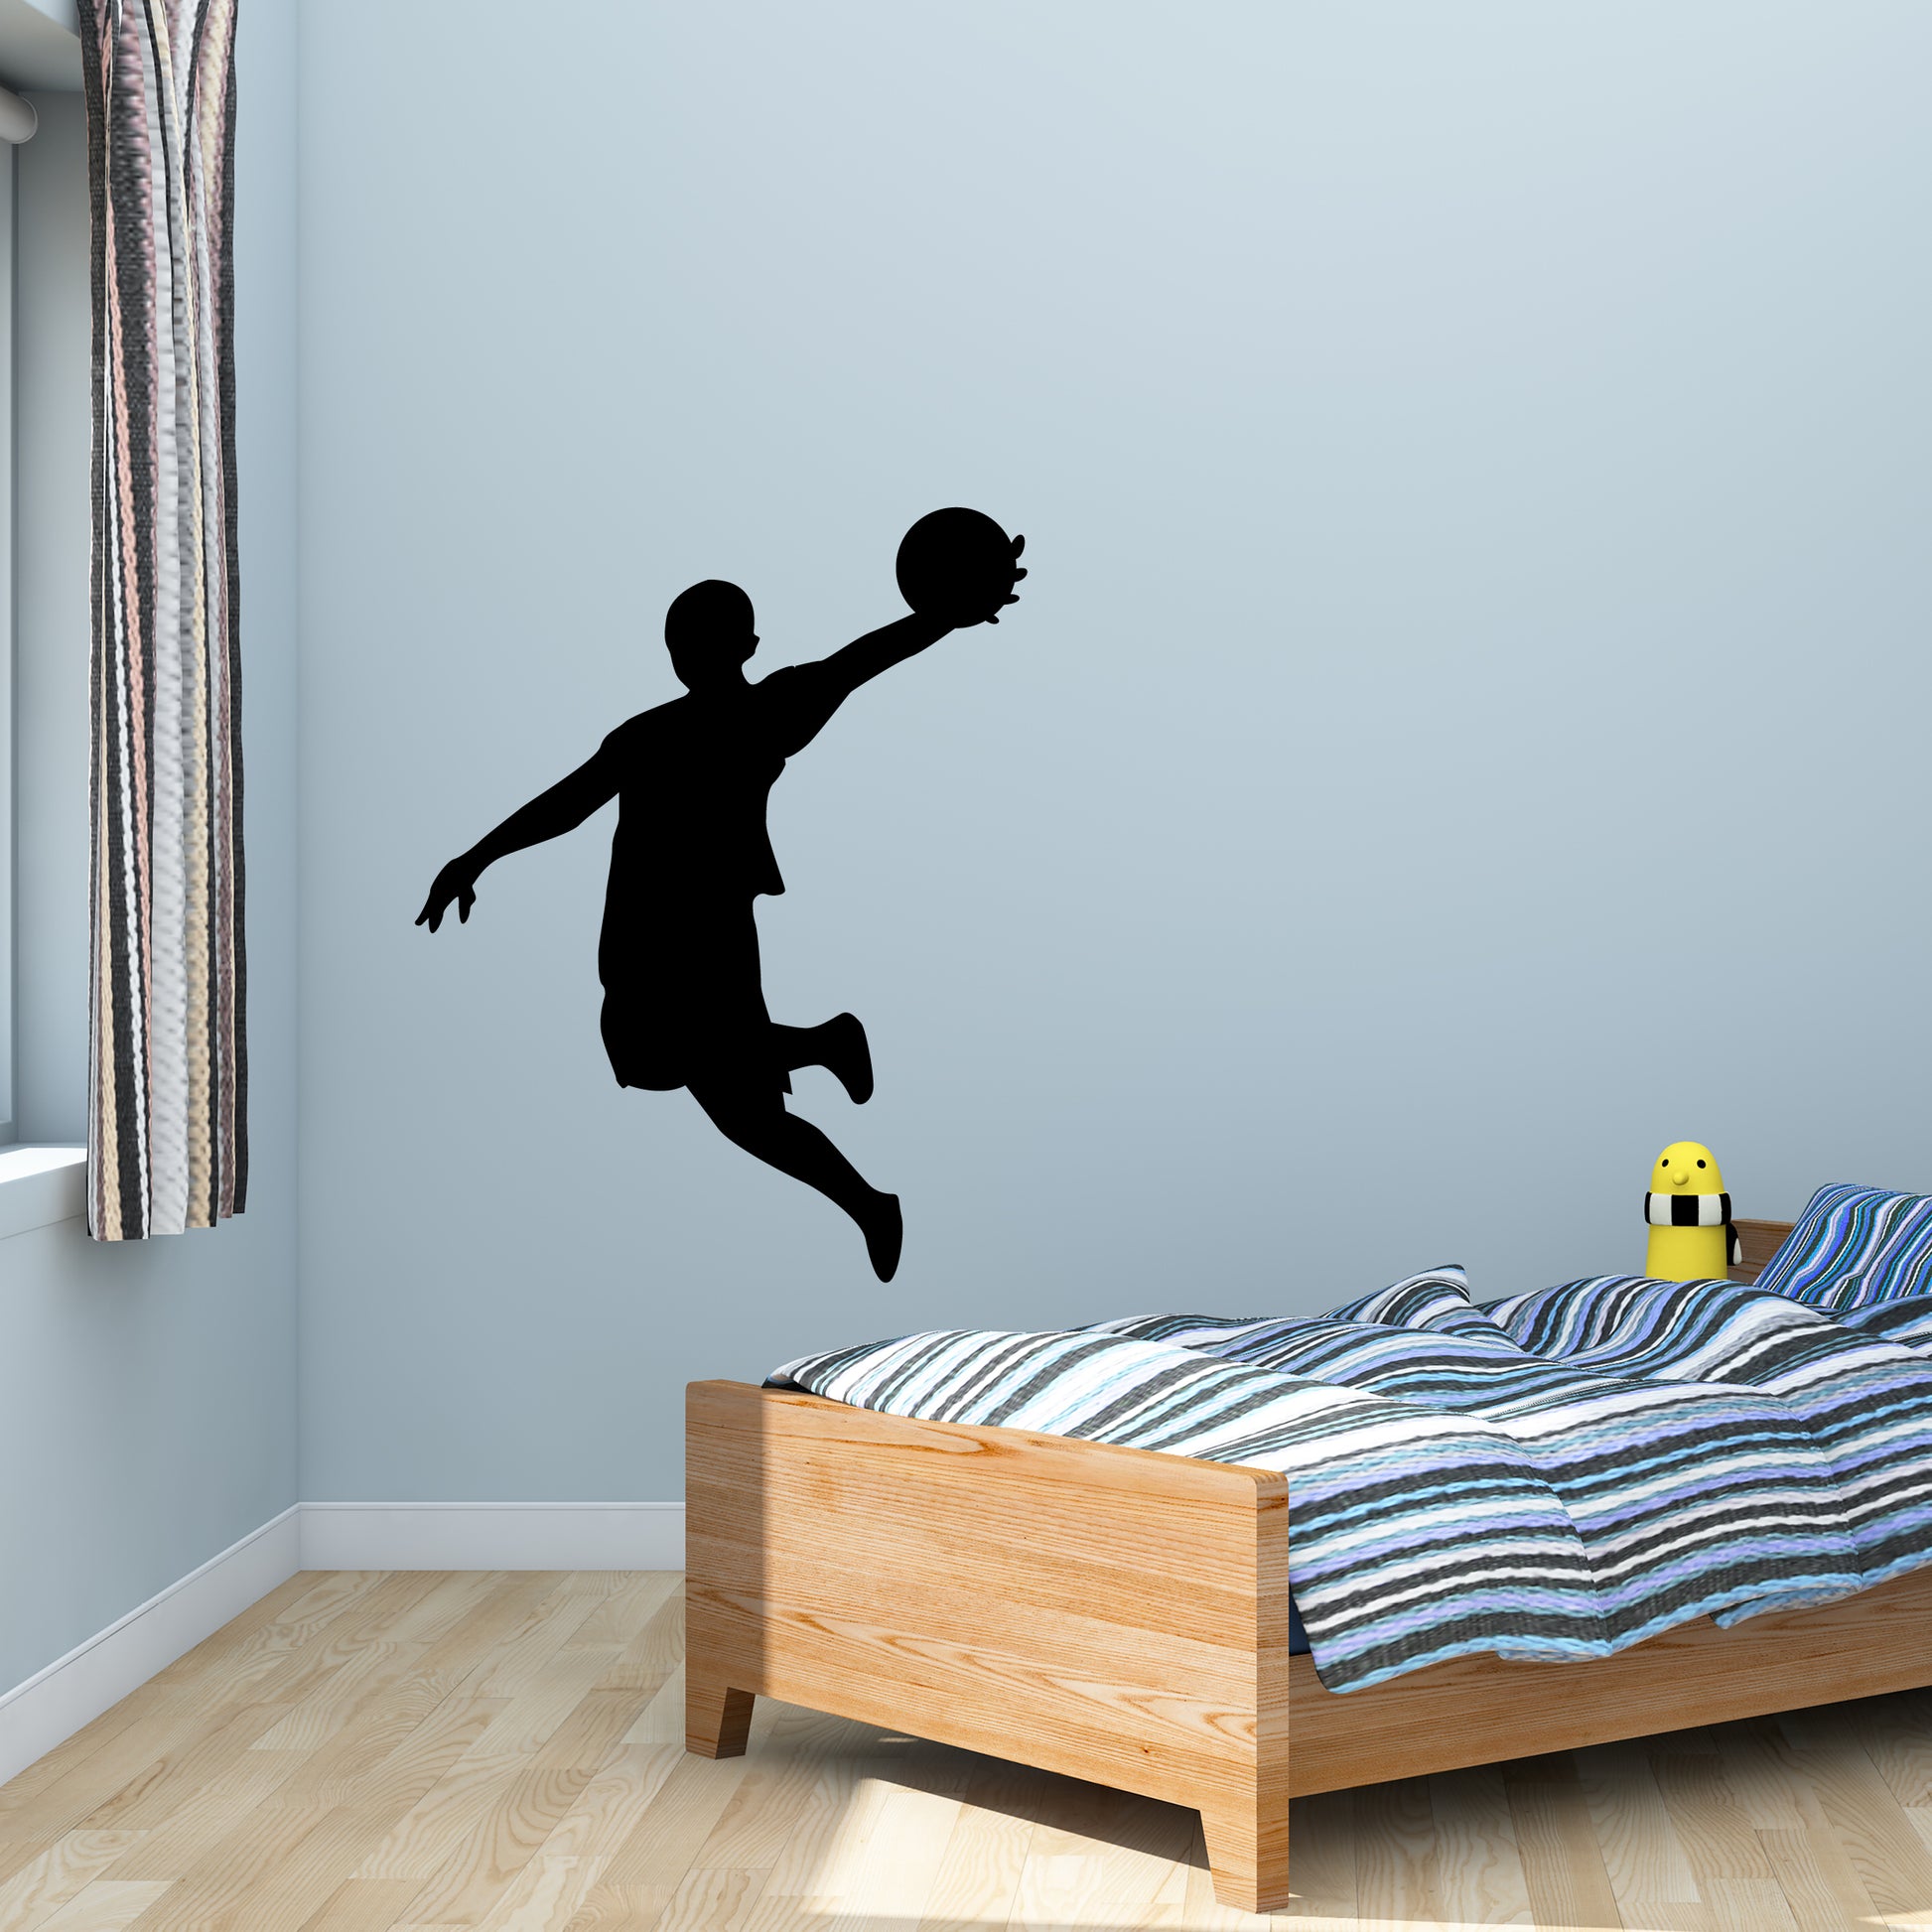 Basketball Man dunking basketball Jordan vinyl sticker decal for kids room above desk